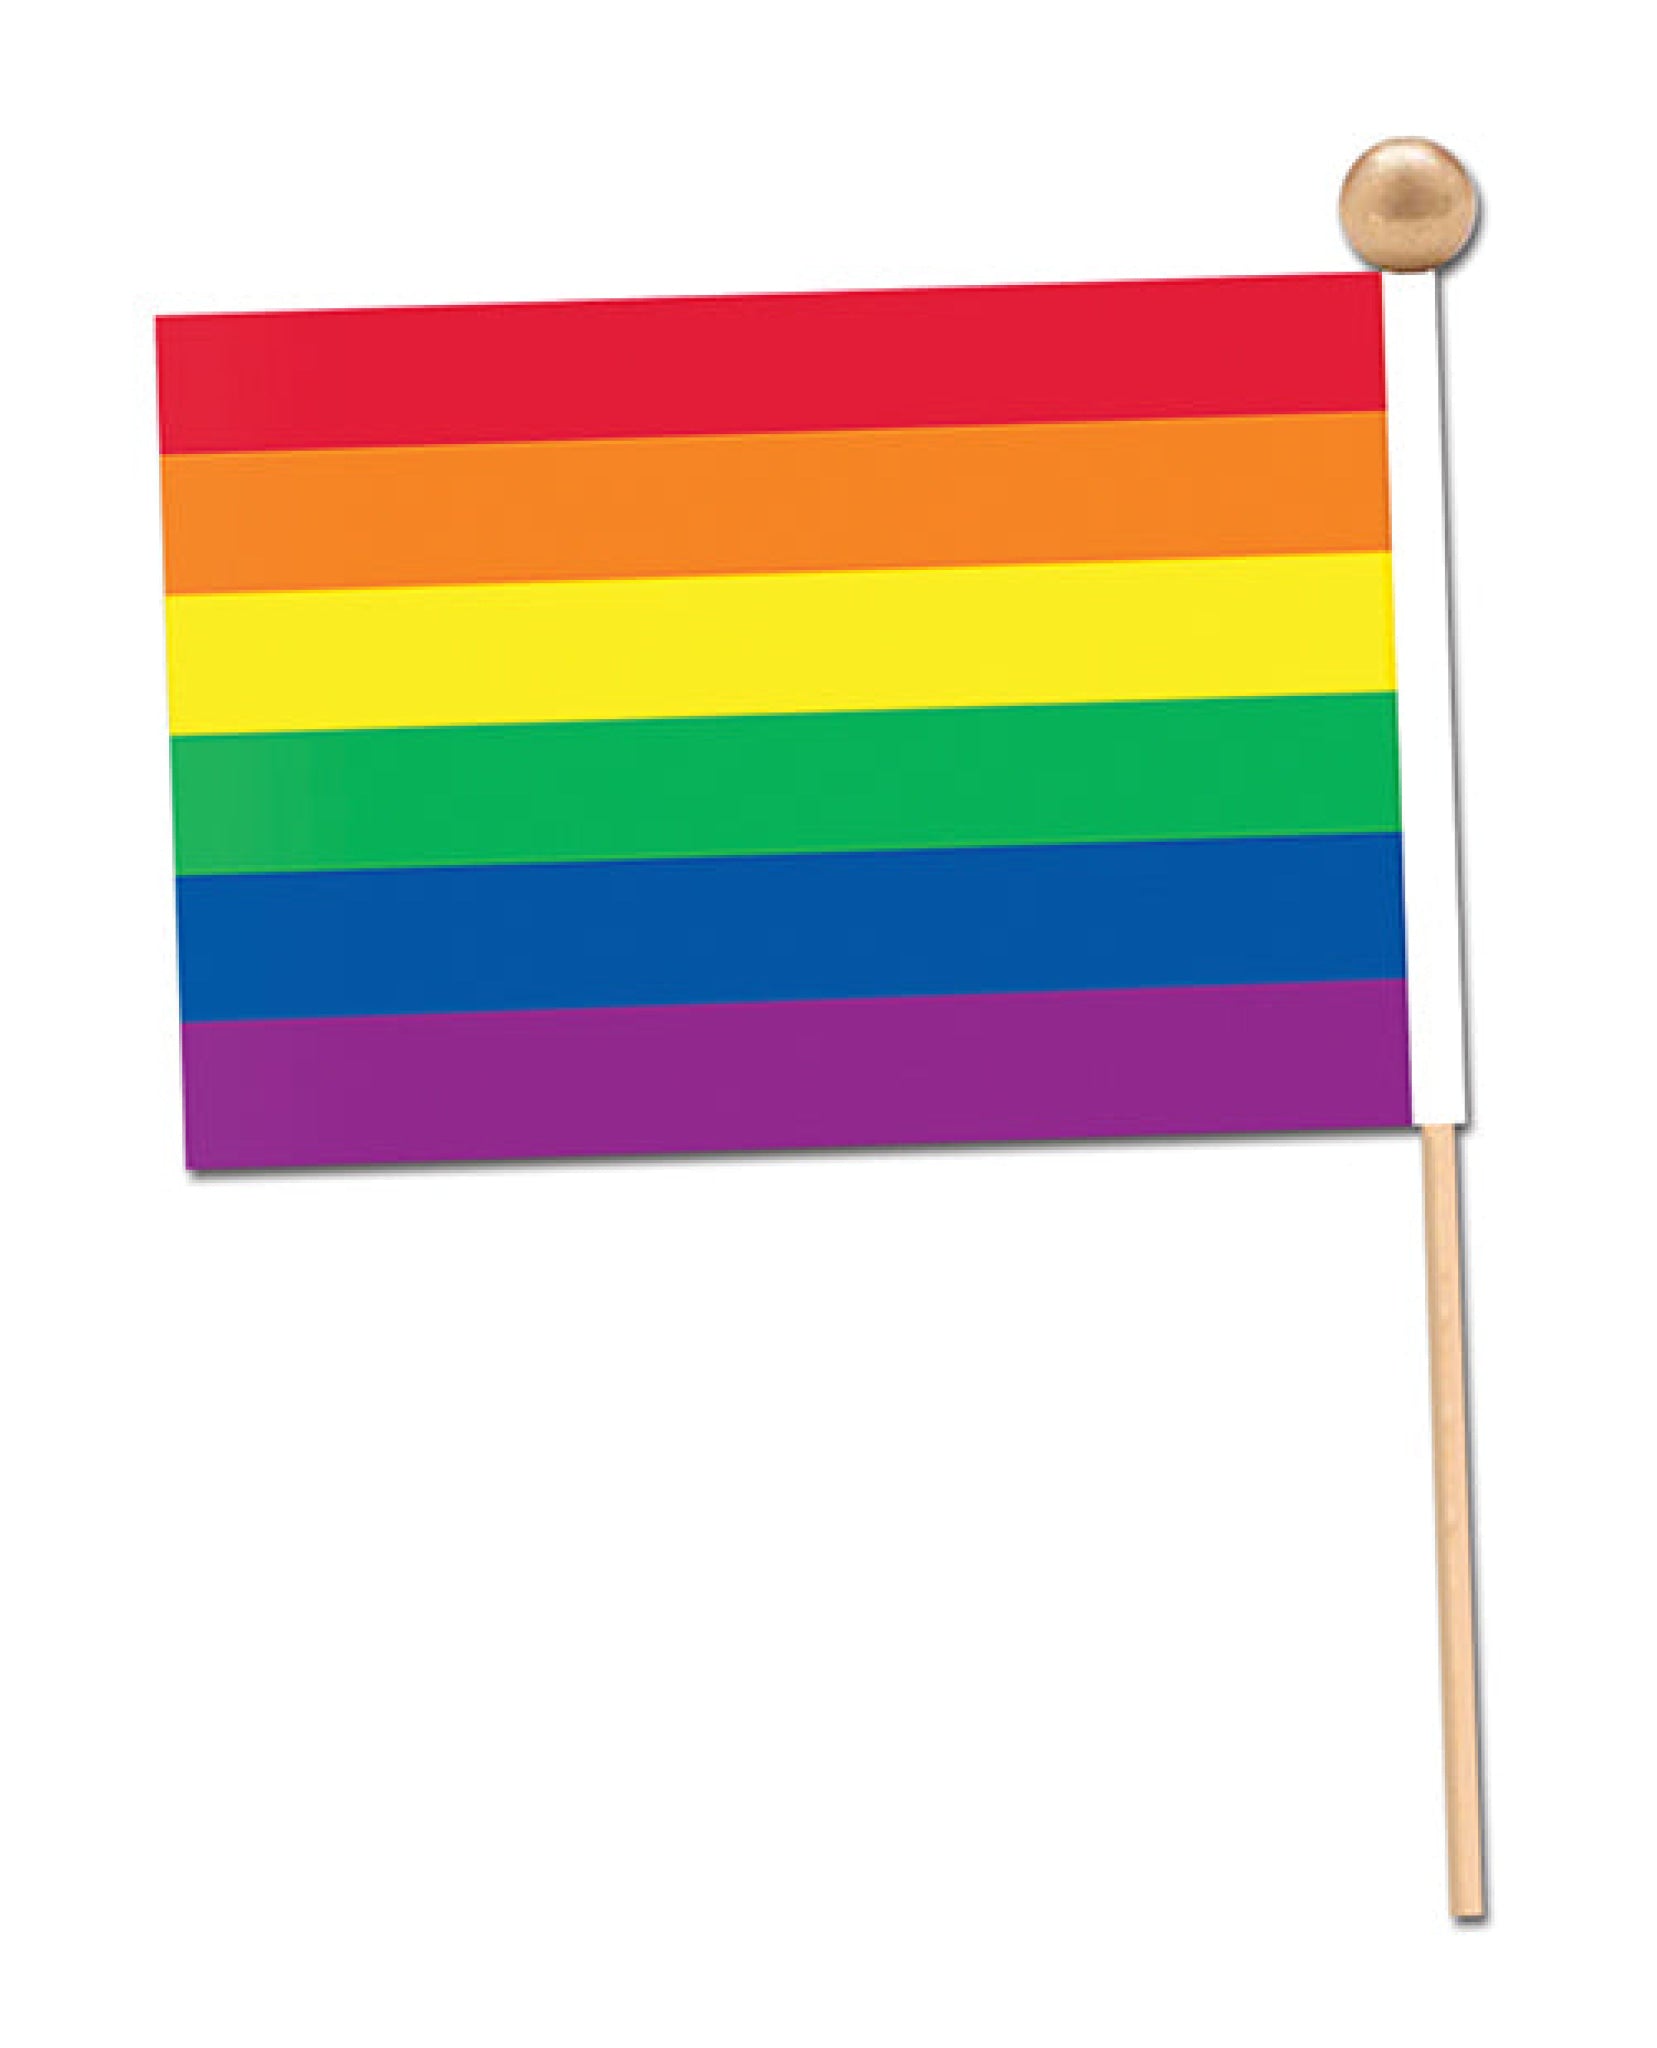 Pride Fabric Flag - Rainbow Beistle